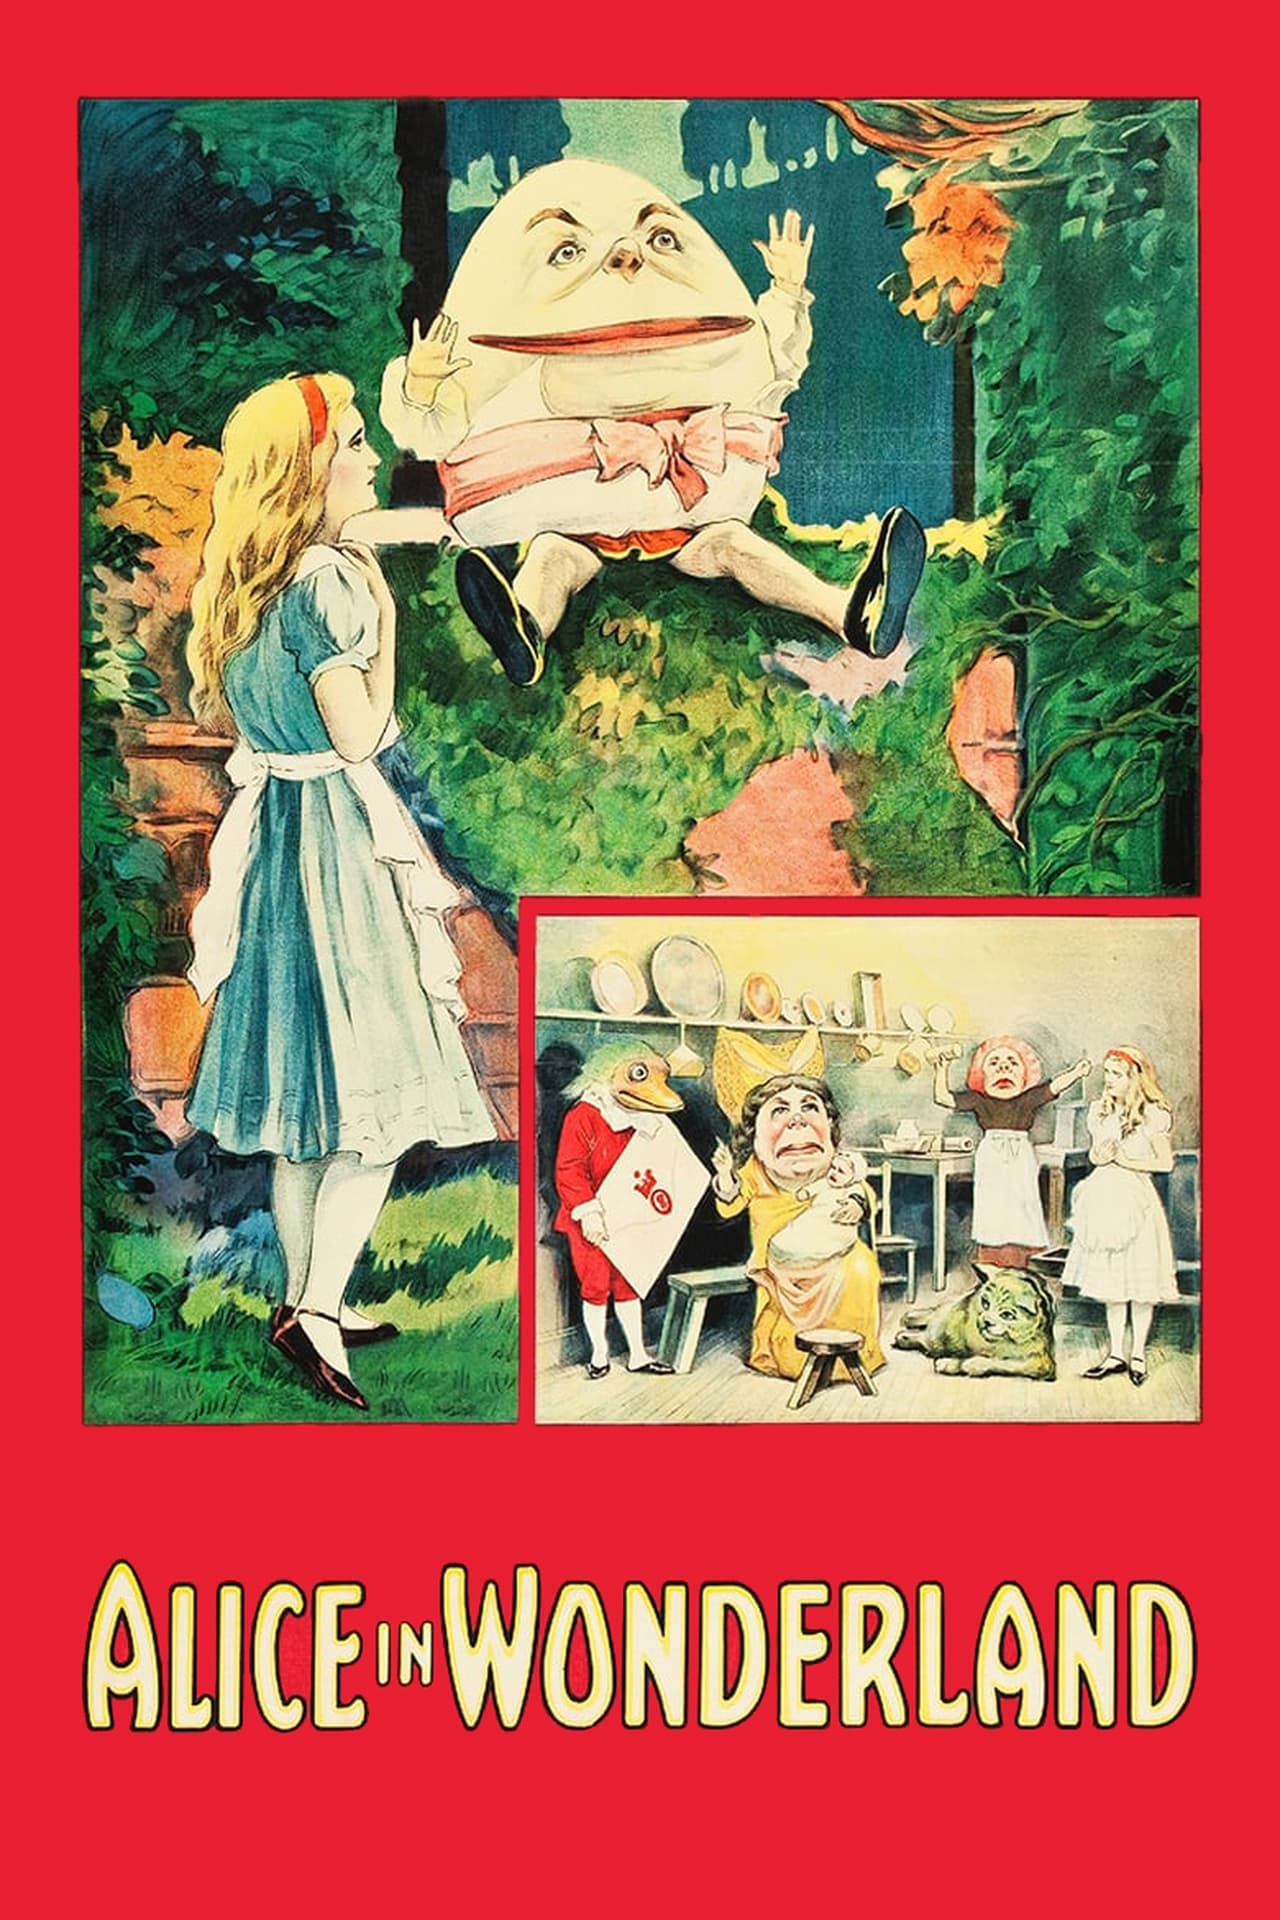 aubrey brian recommends Alice In Wonderland Subtitles